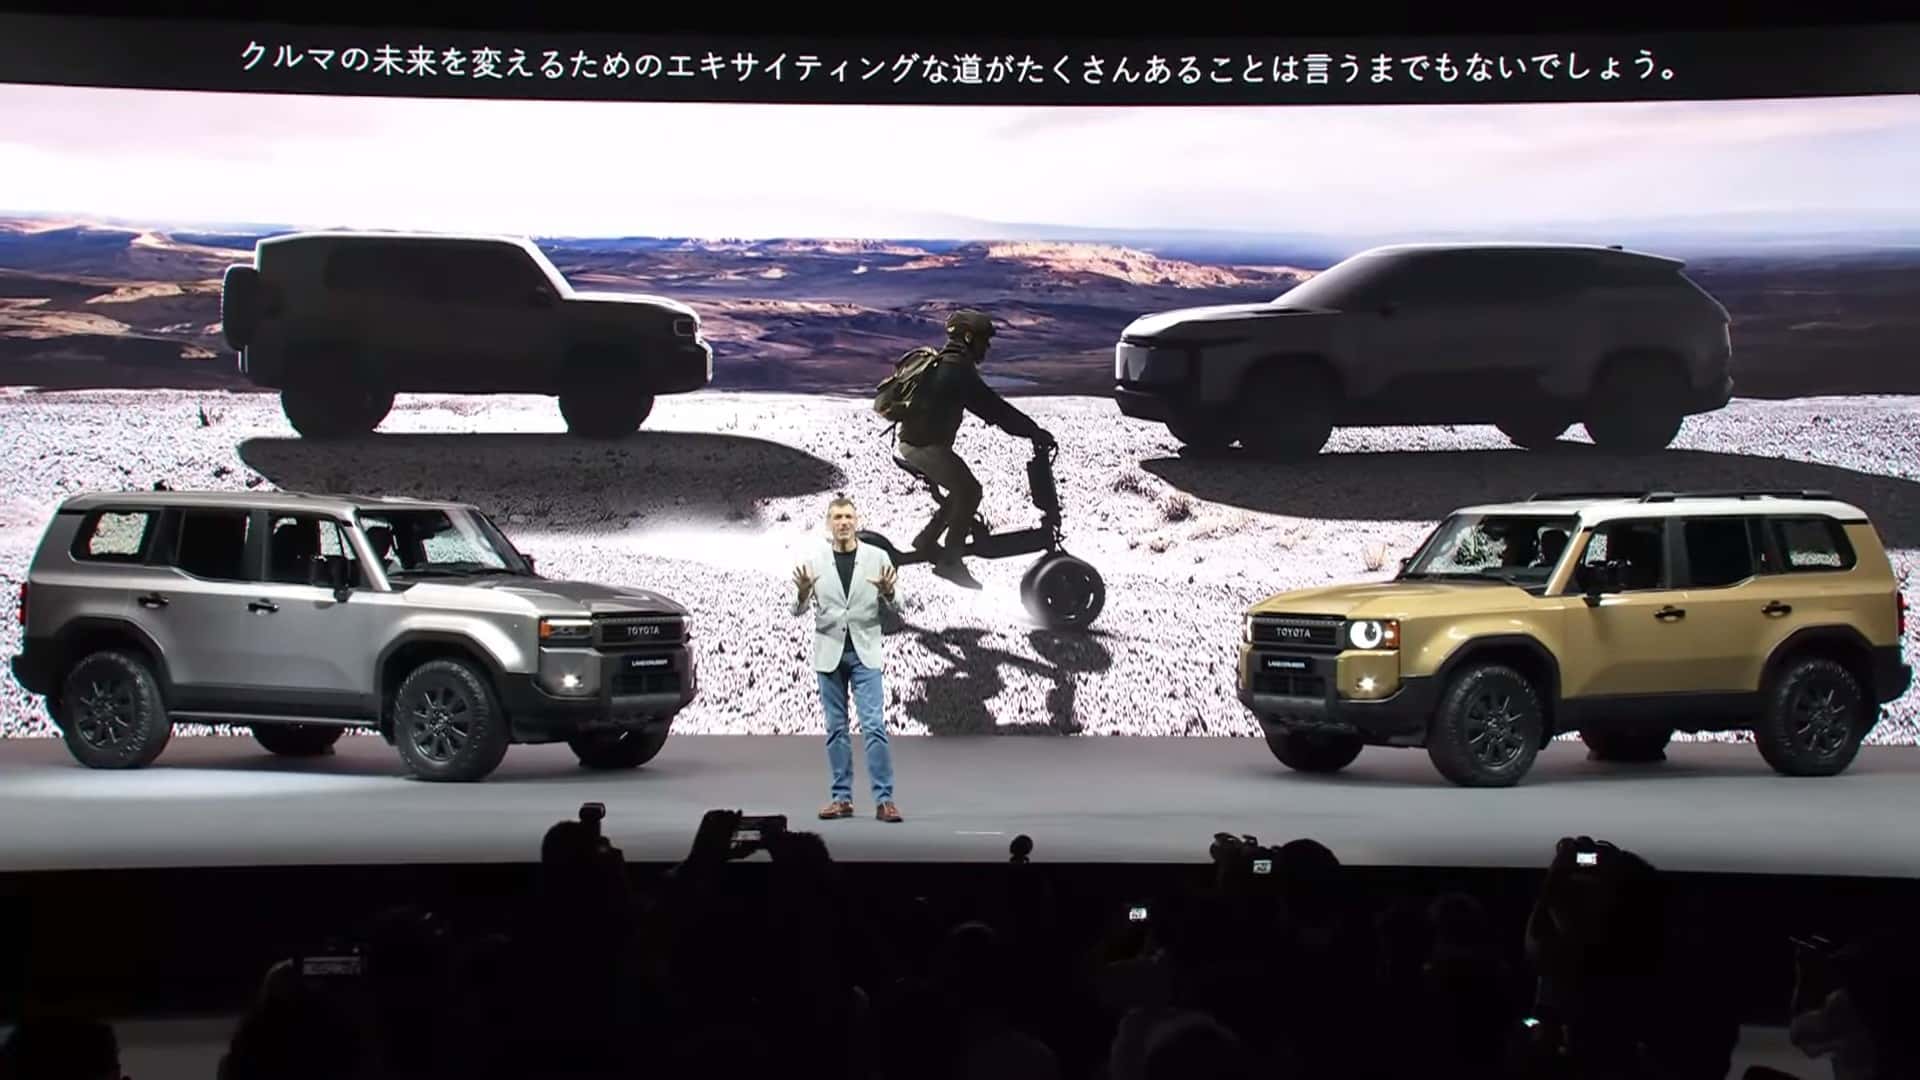 تويوتا تسجل الاسم التجاري "لاندكروزر FJ" لسيارة SUV عضلية جديدة، قد تكون خليفة FJ كروزر 2